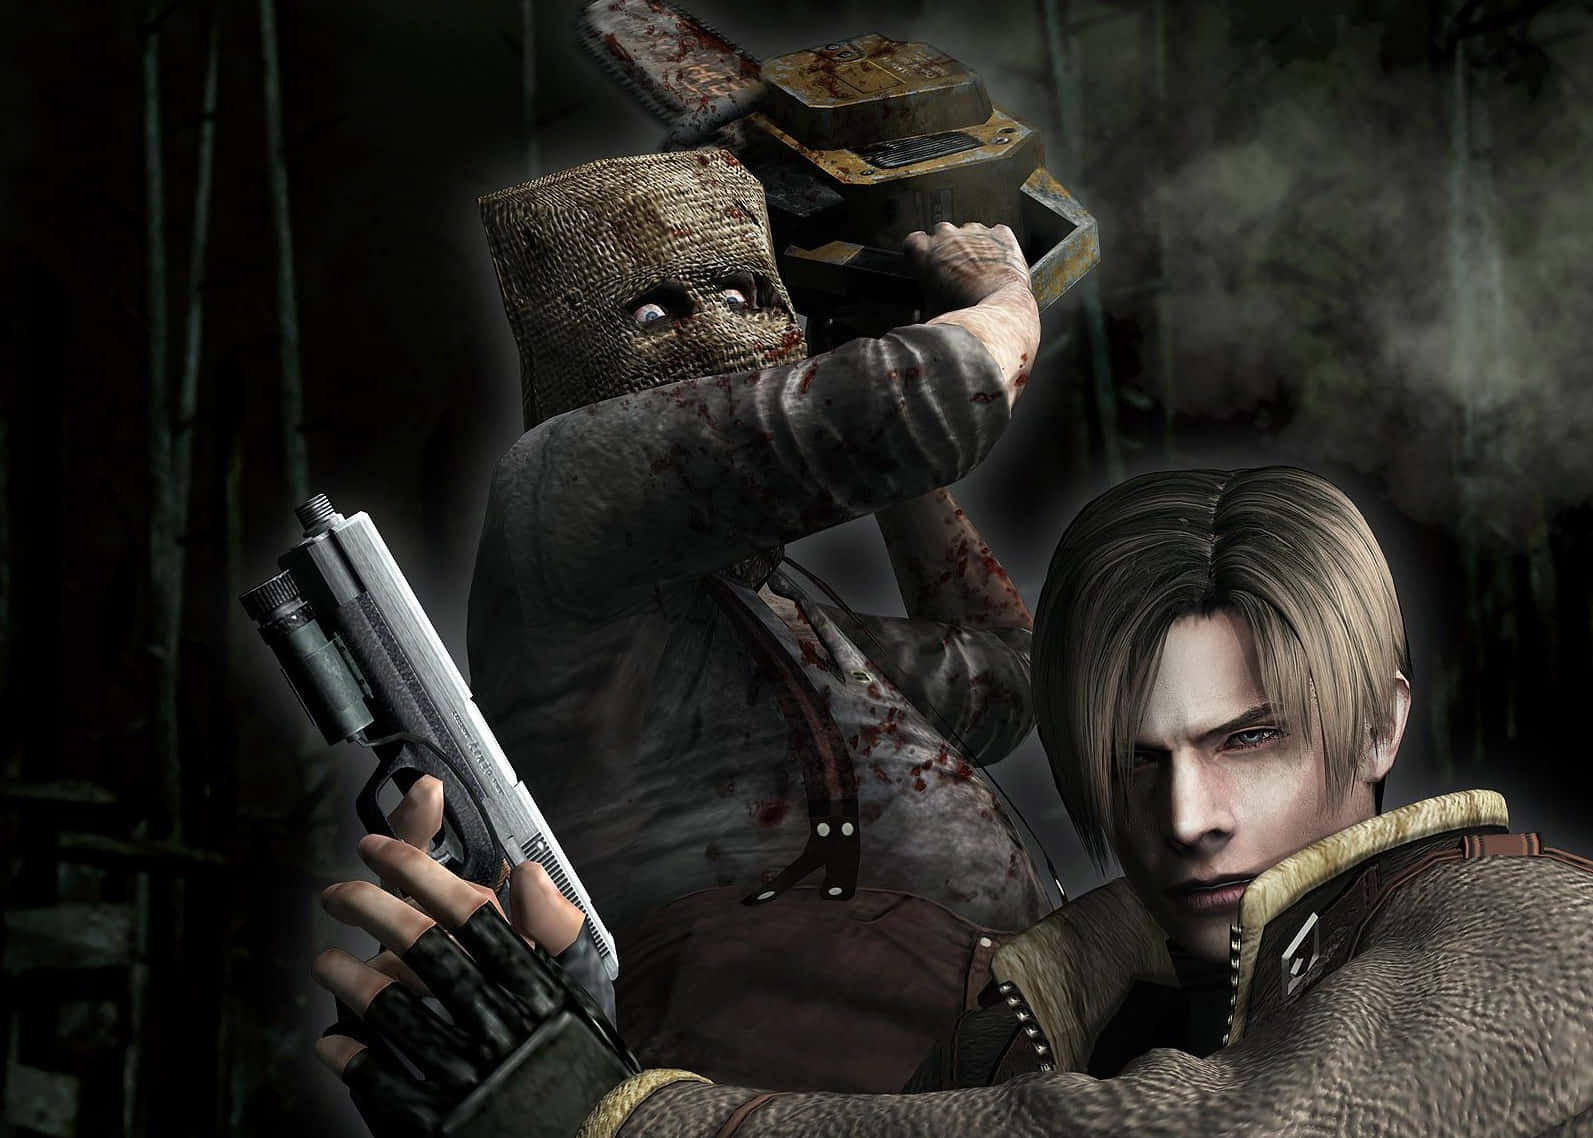 Emozionantescena D'azione Di Resident Evil